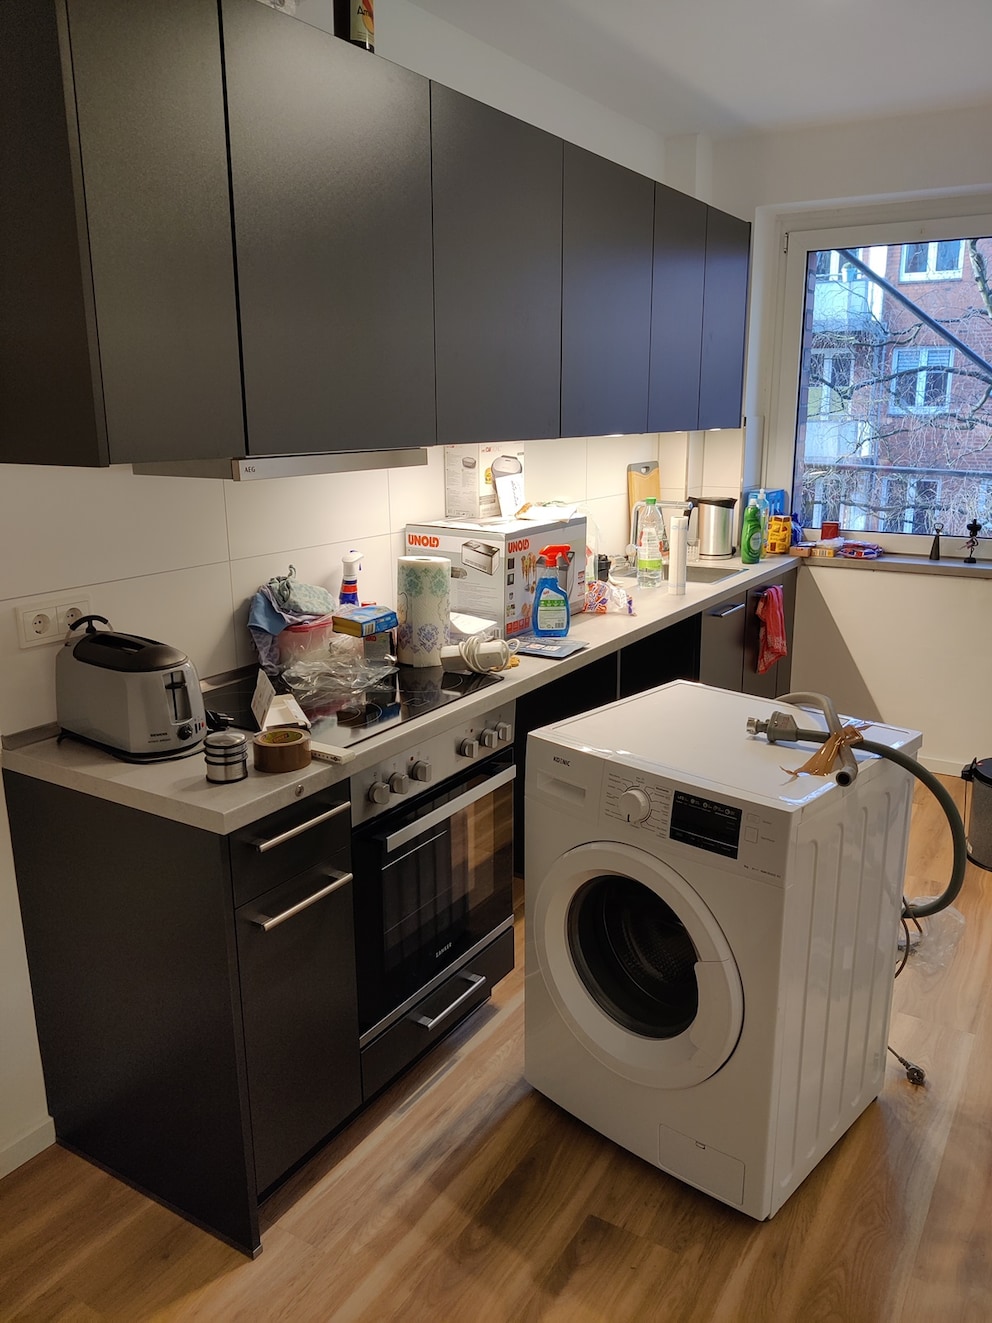 Der Blick in die Küche: Die Waschmaschine steht mitten im Raum und muss noch in die Küchenzeile platziert werden.